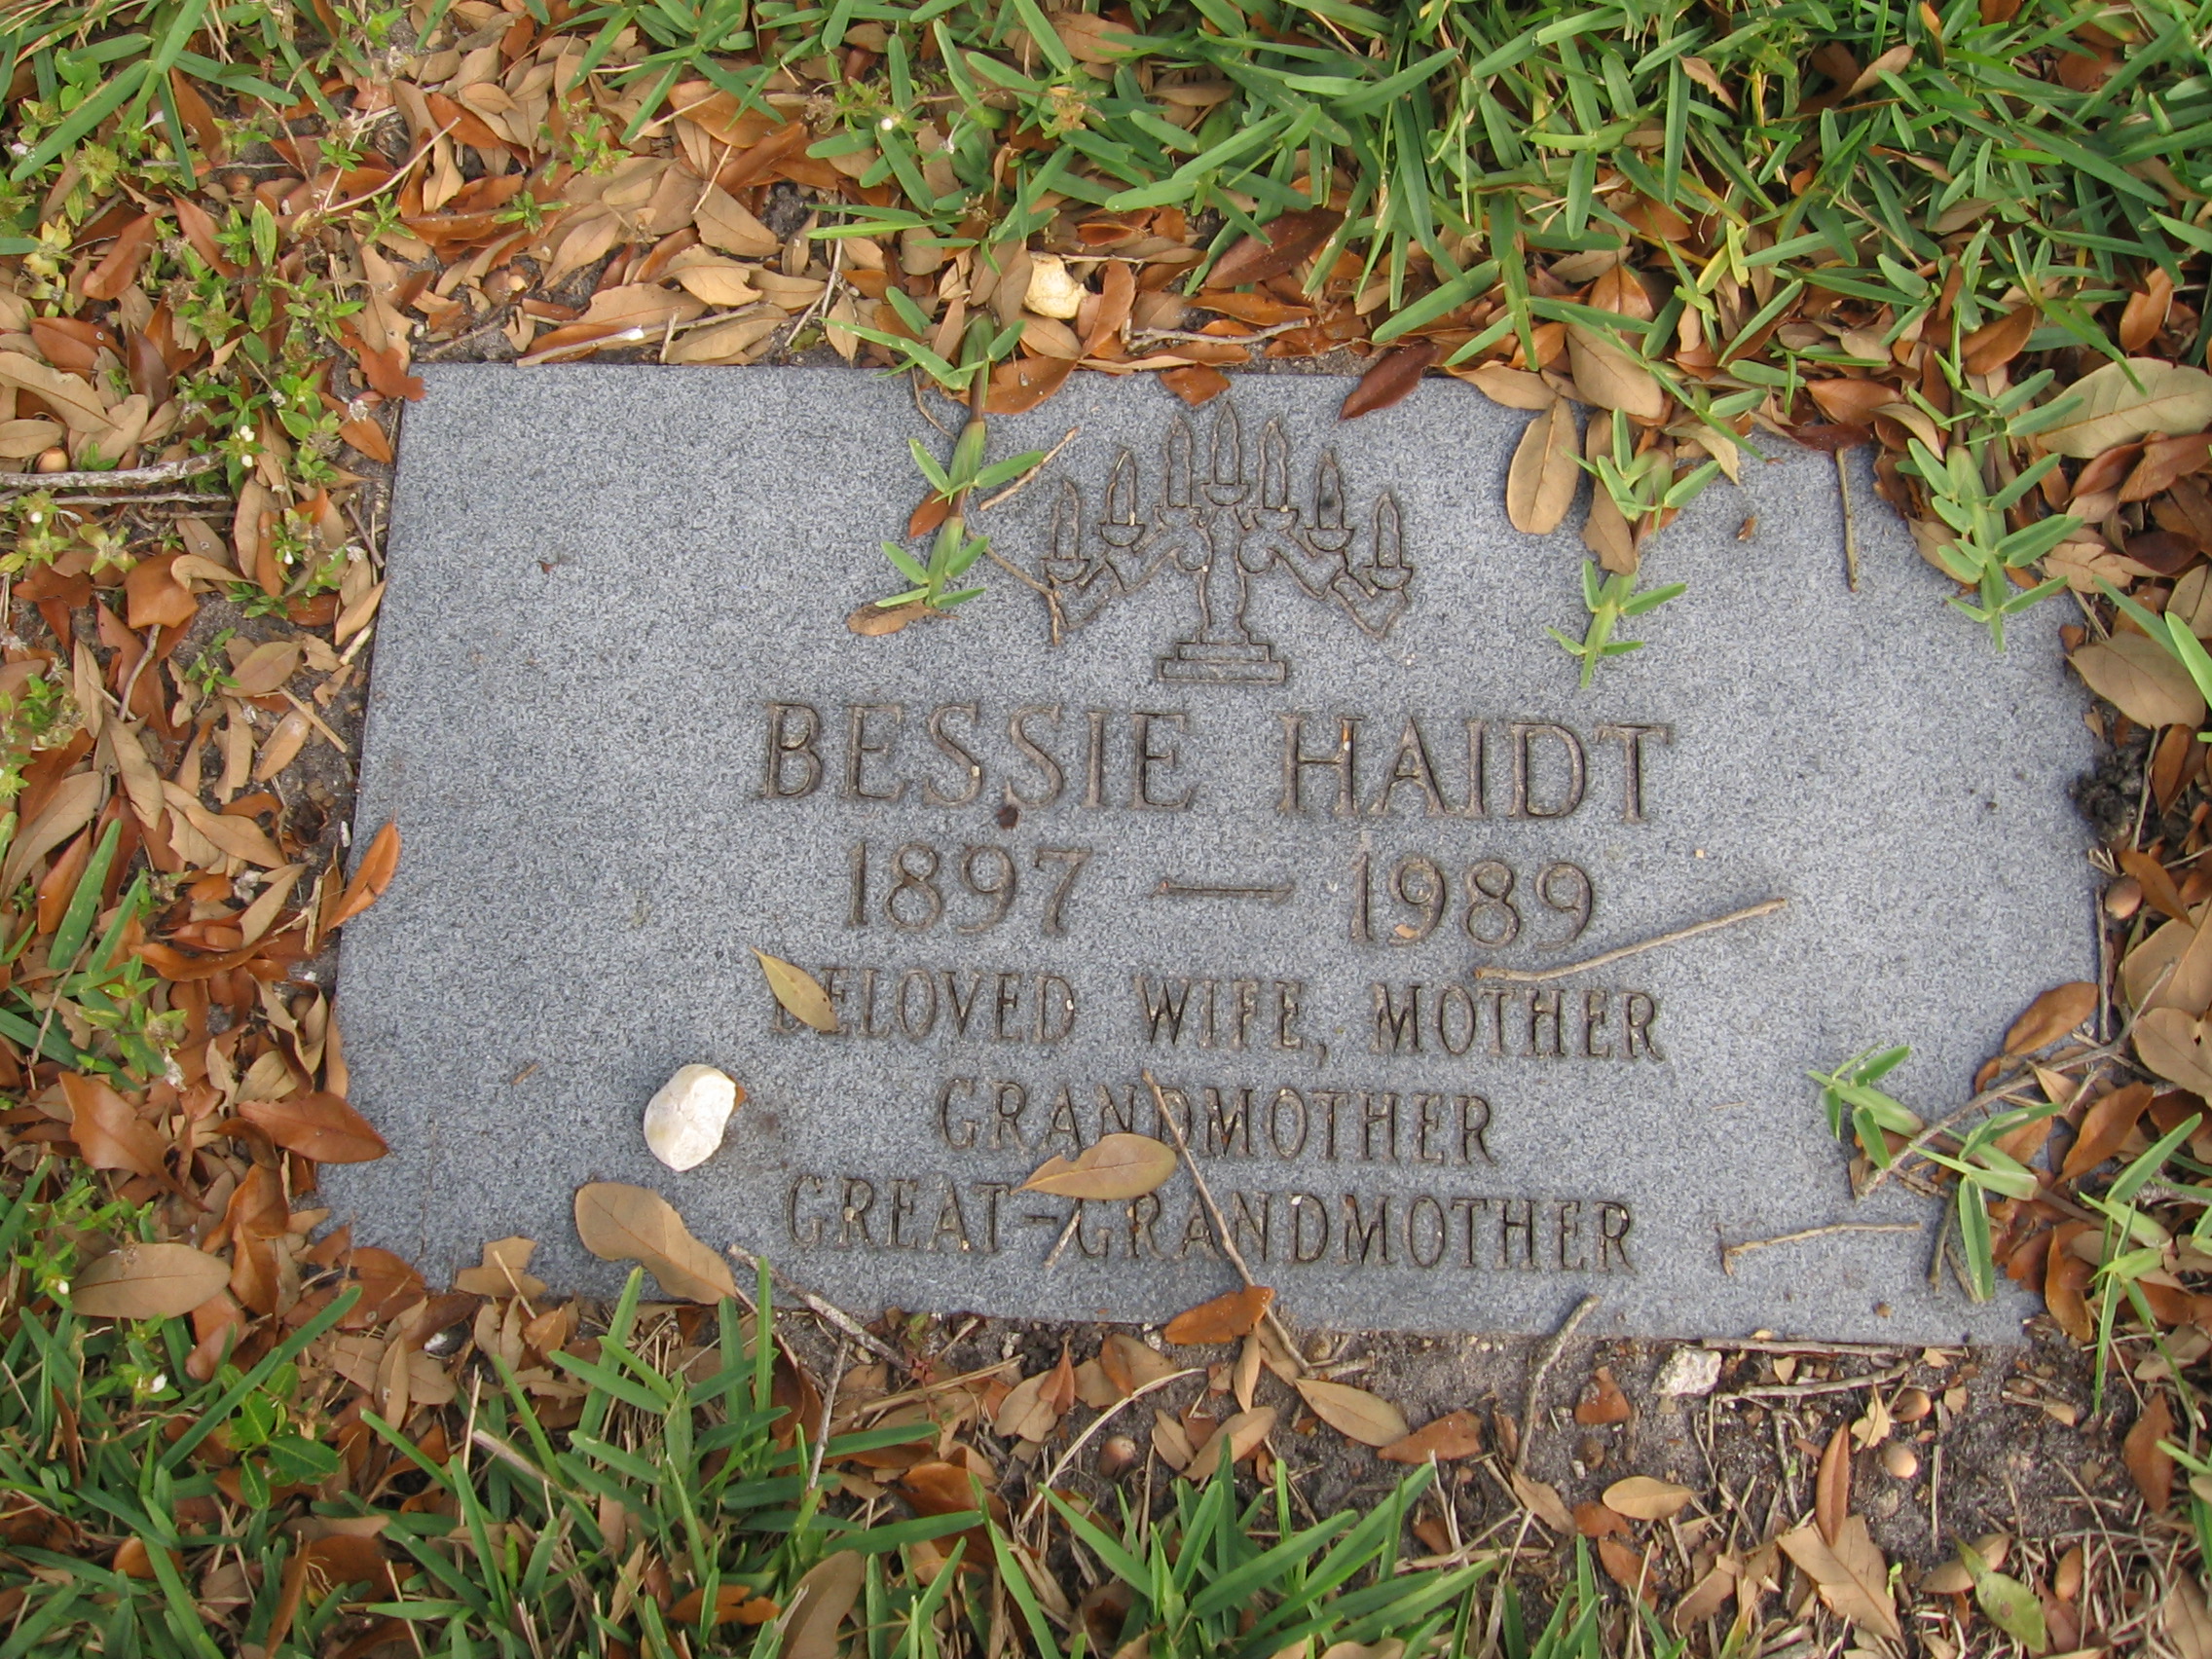 Bessie Haidt